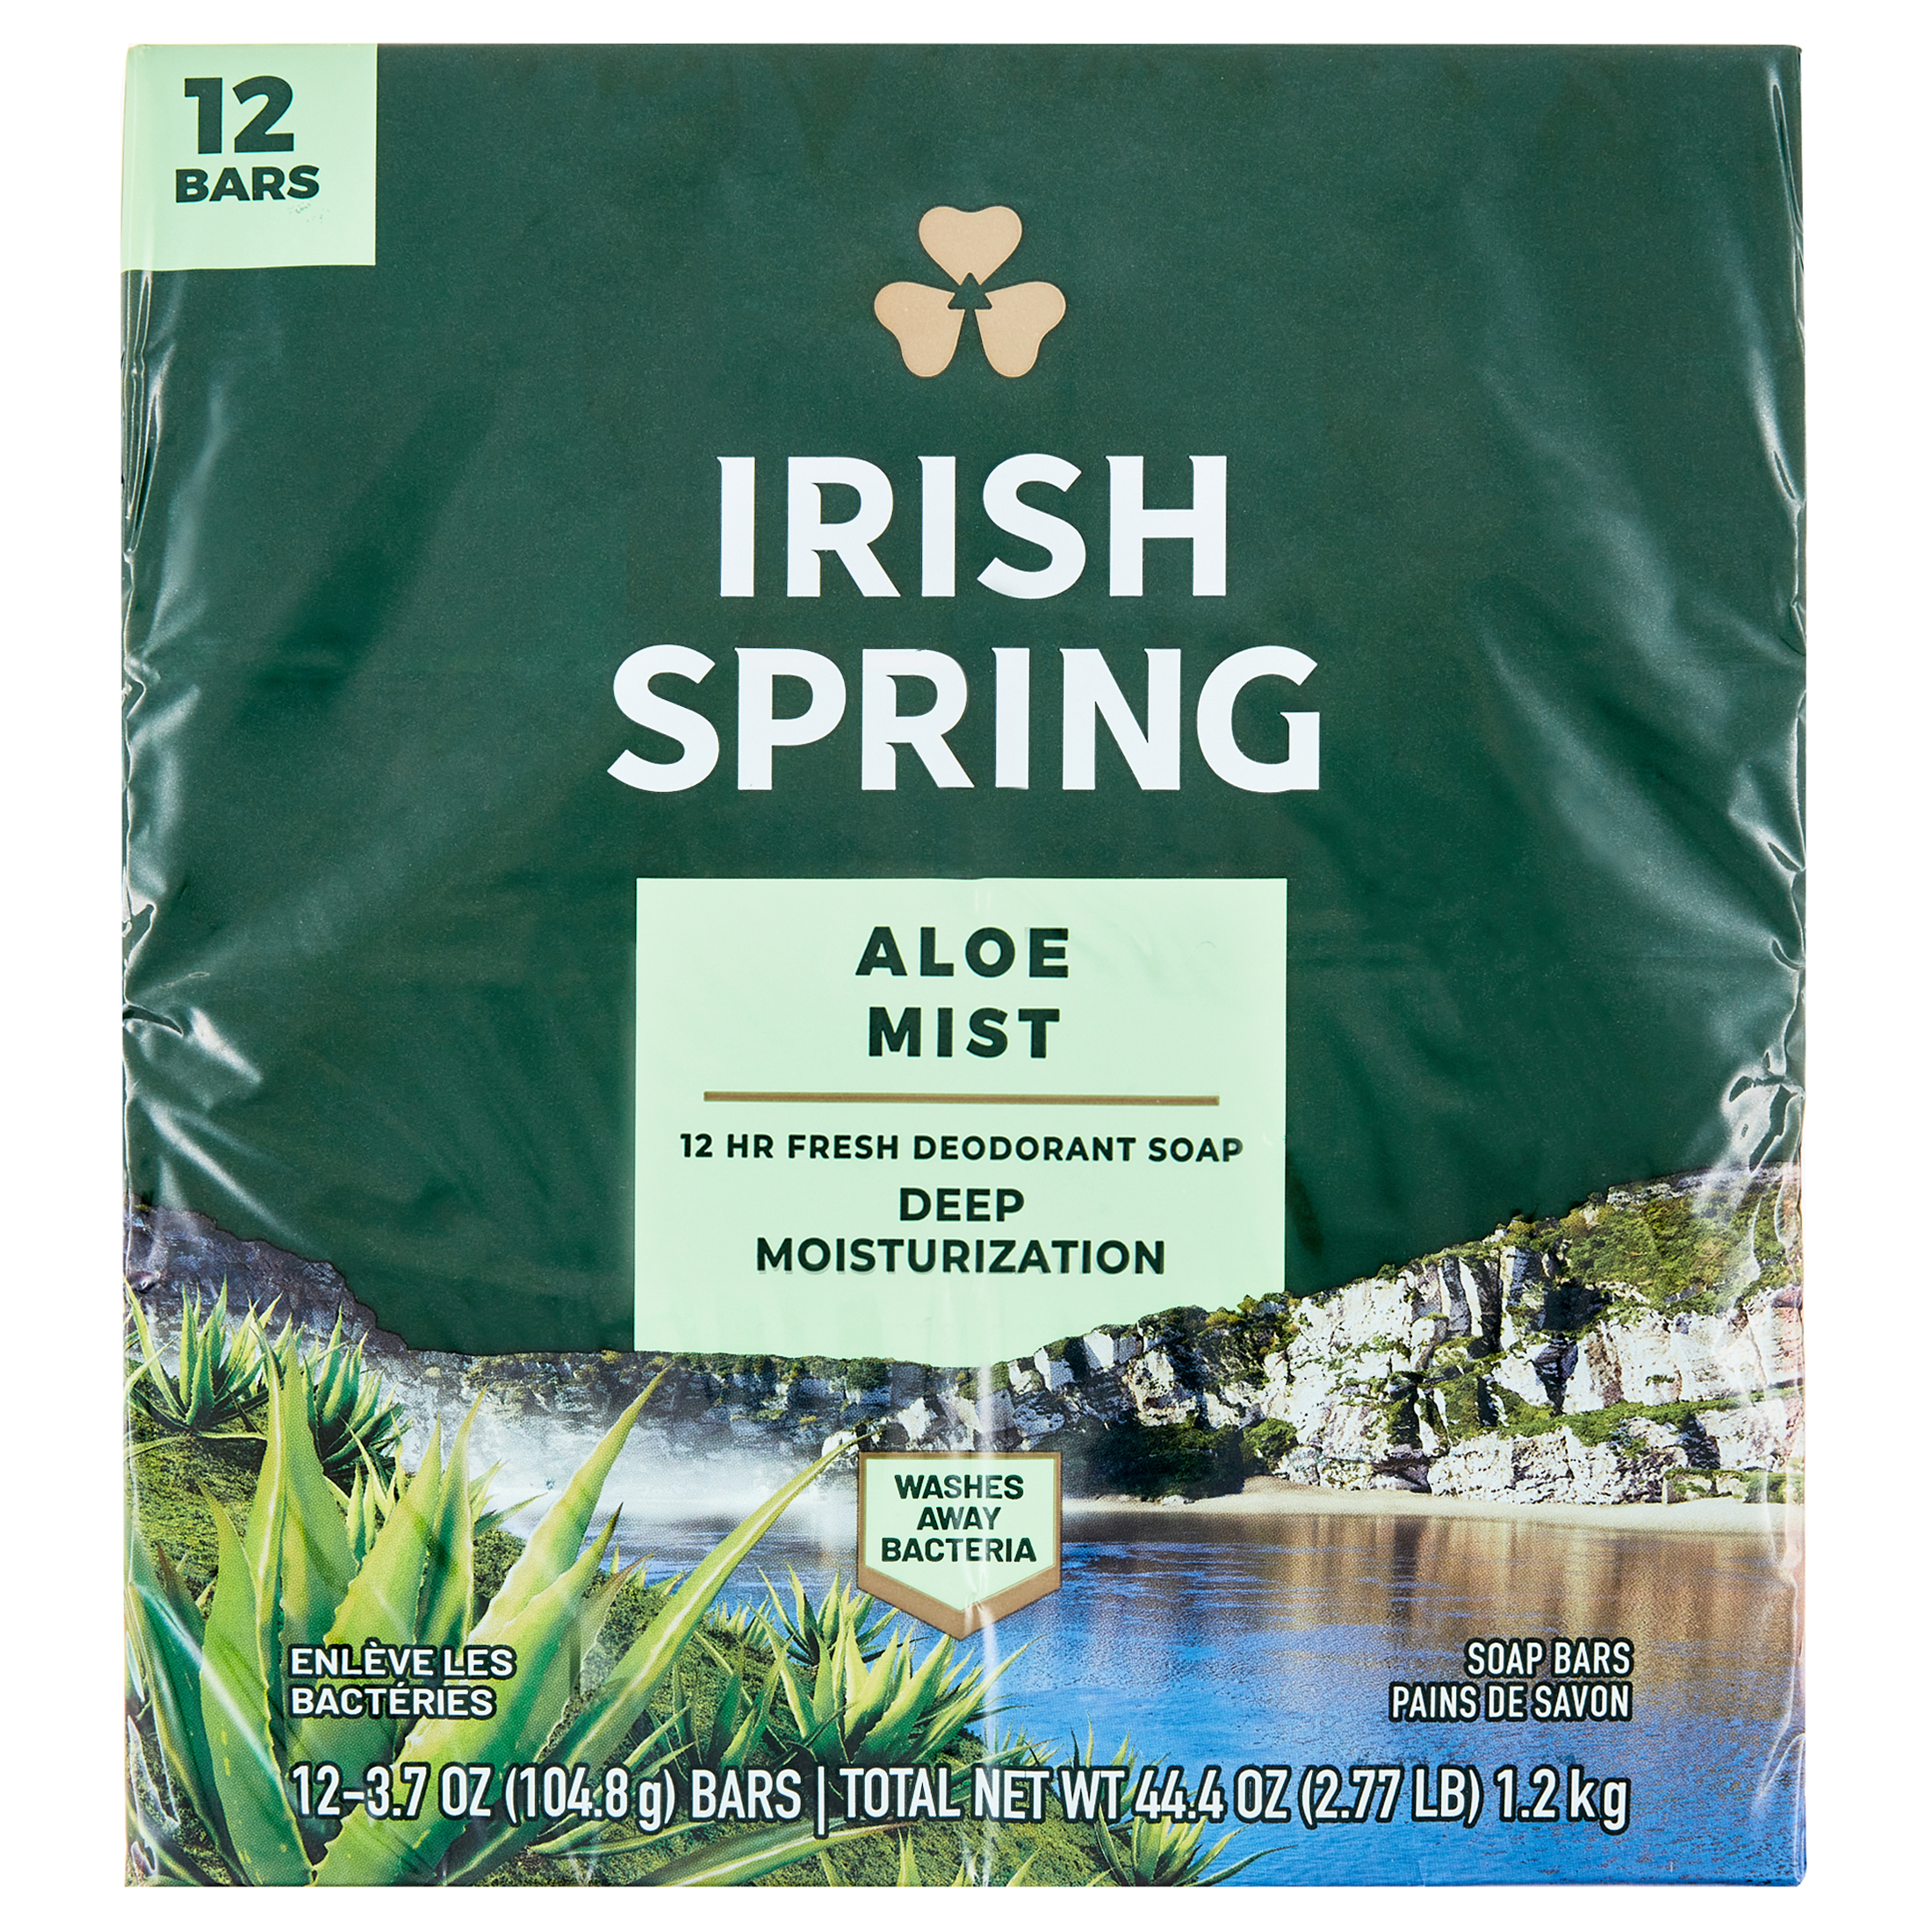 Irish Spring Aloe Mist Deodorant Bar Soap for Men, Feel Fresh All Day, 3.7 oz, 12 Pack - image 1 of 23